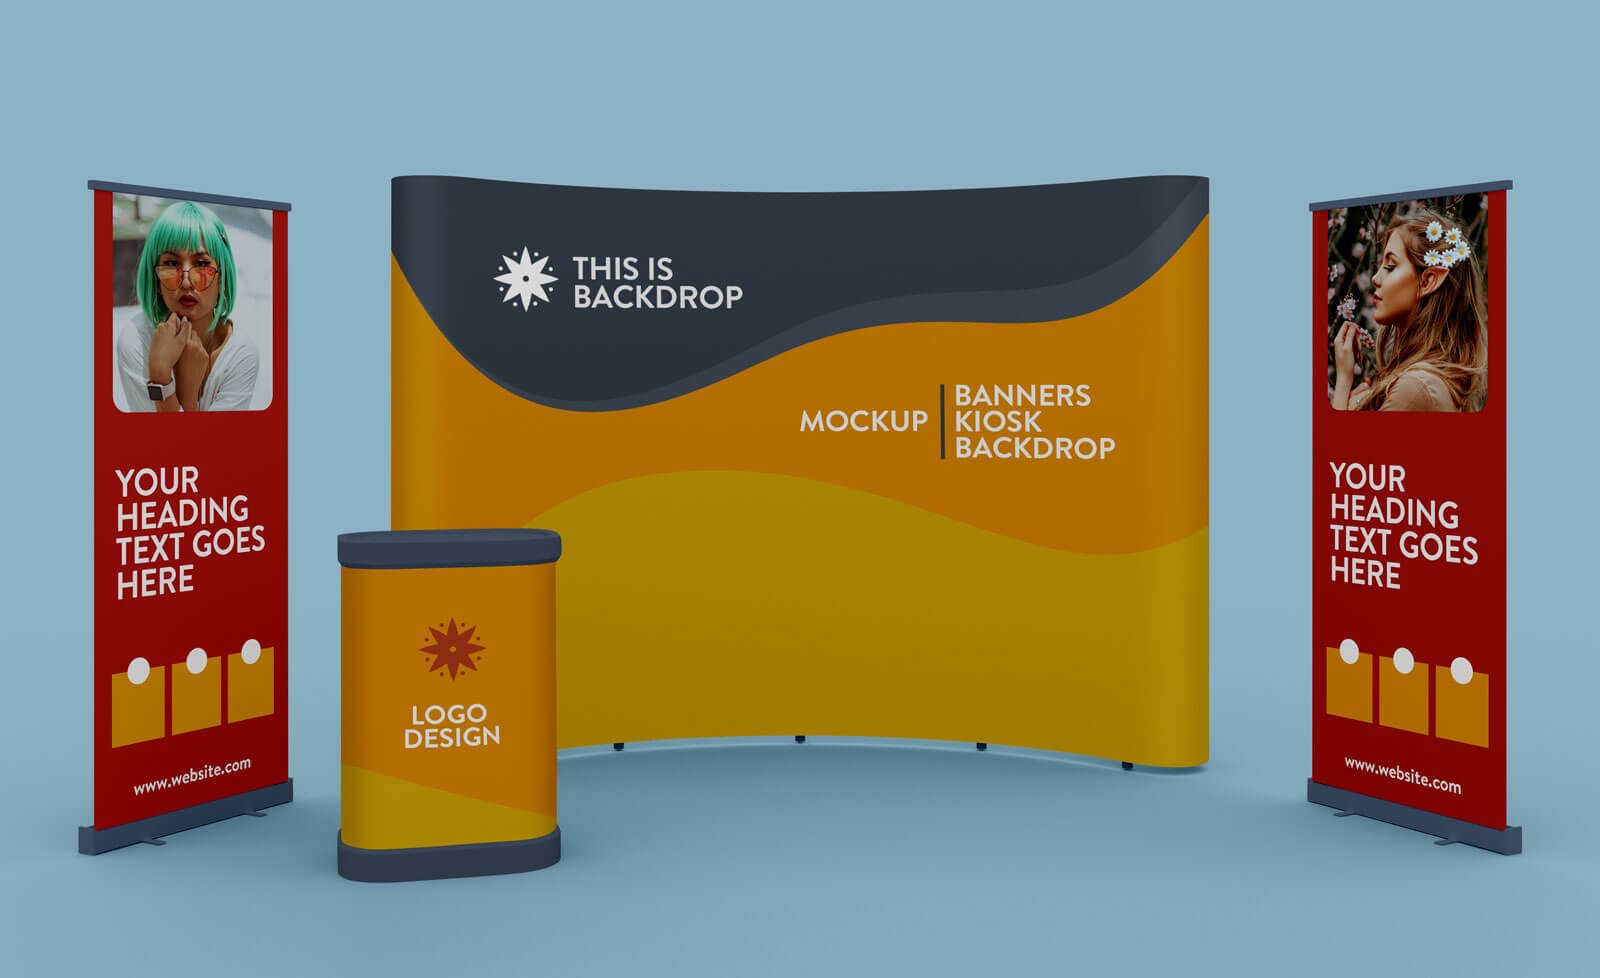 Download Free Exhibition Standing Banner, Kiosk & Backdrop Mockup PSD | Designbolts